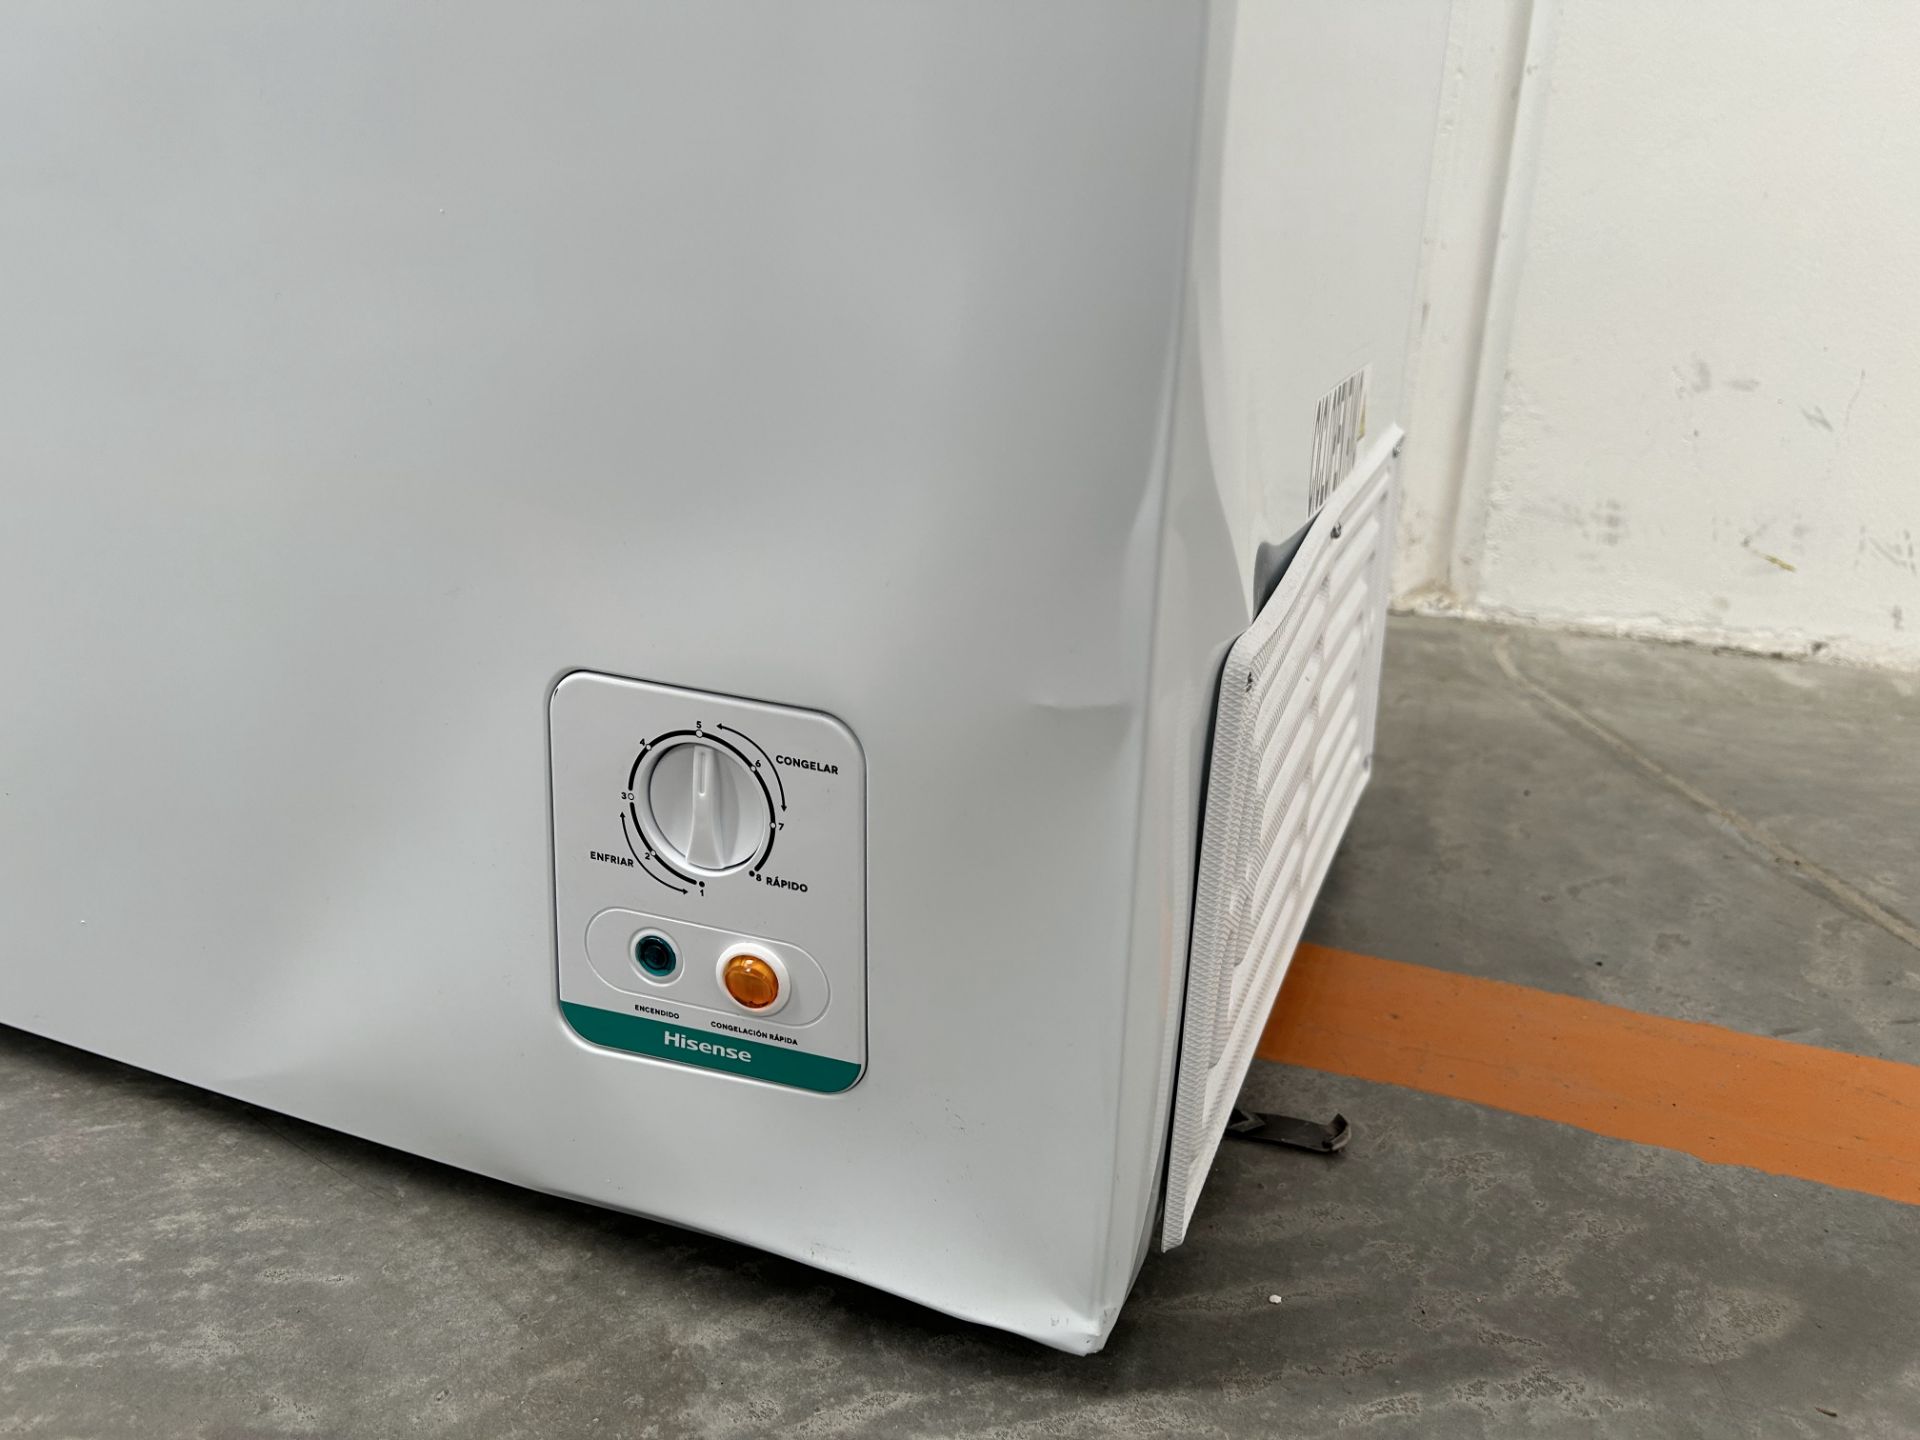 Lote de 2 congeladores contiene: 1 congelador Marca HISENSE, Modelo FC70D6BWX, Serie 20778, Color B - Image 6 of 7